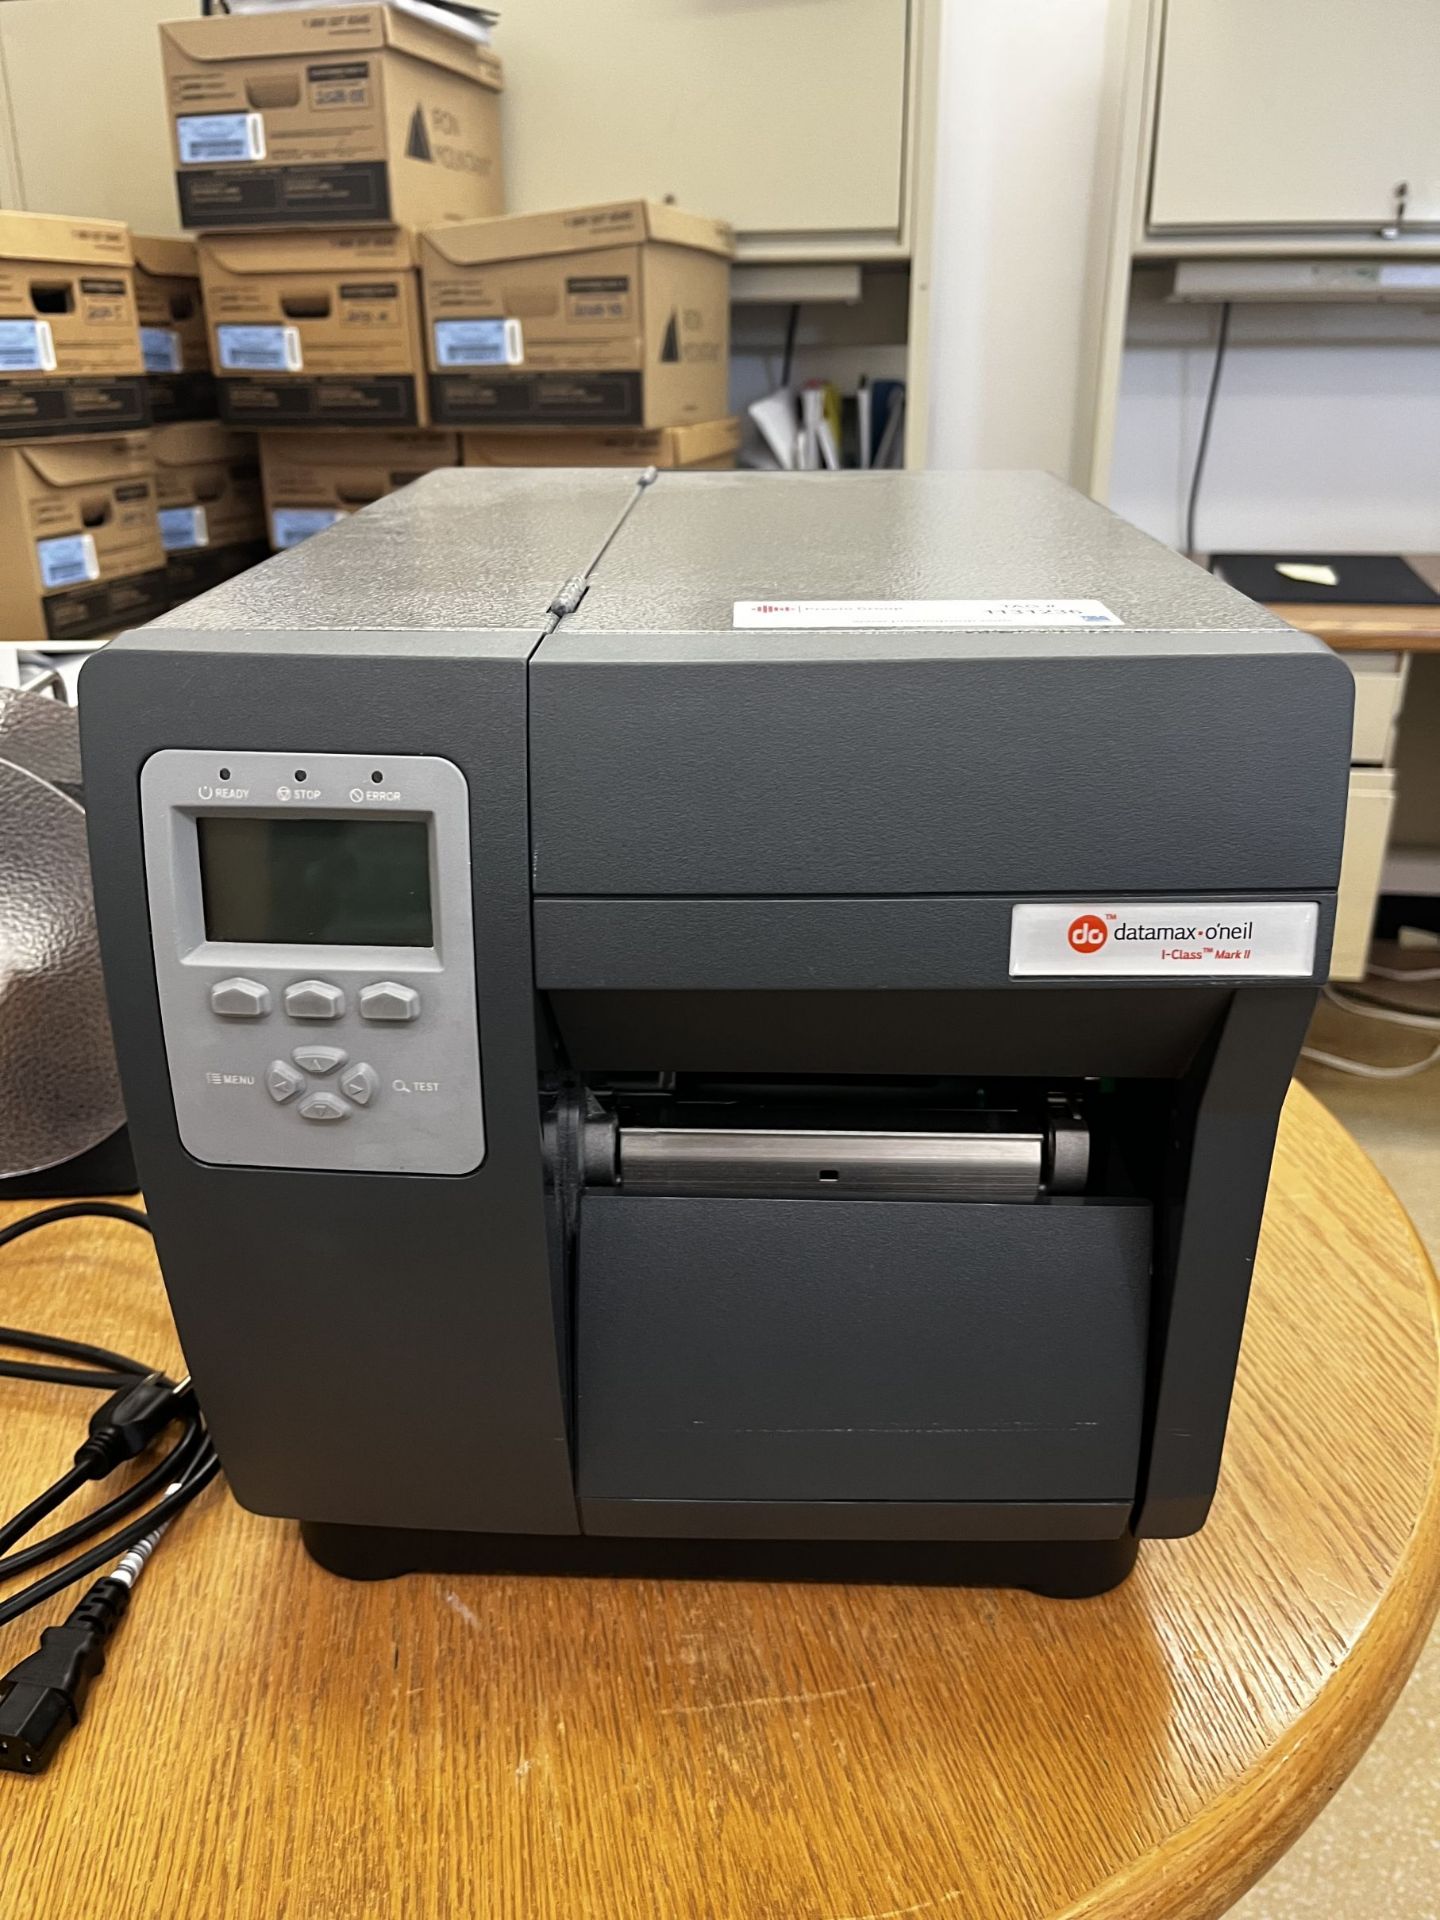 Datamax - O'neil I-CLASS mod: I-4212e Label Printer